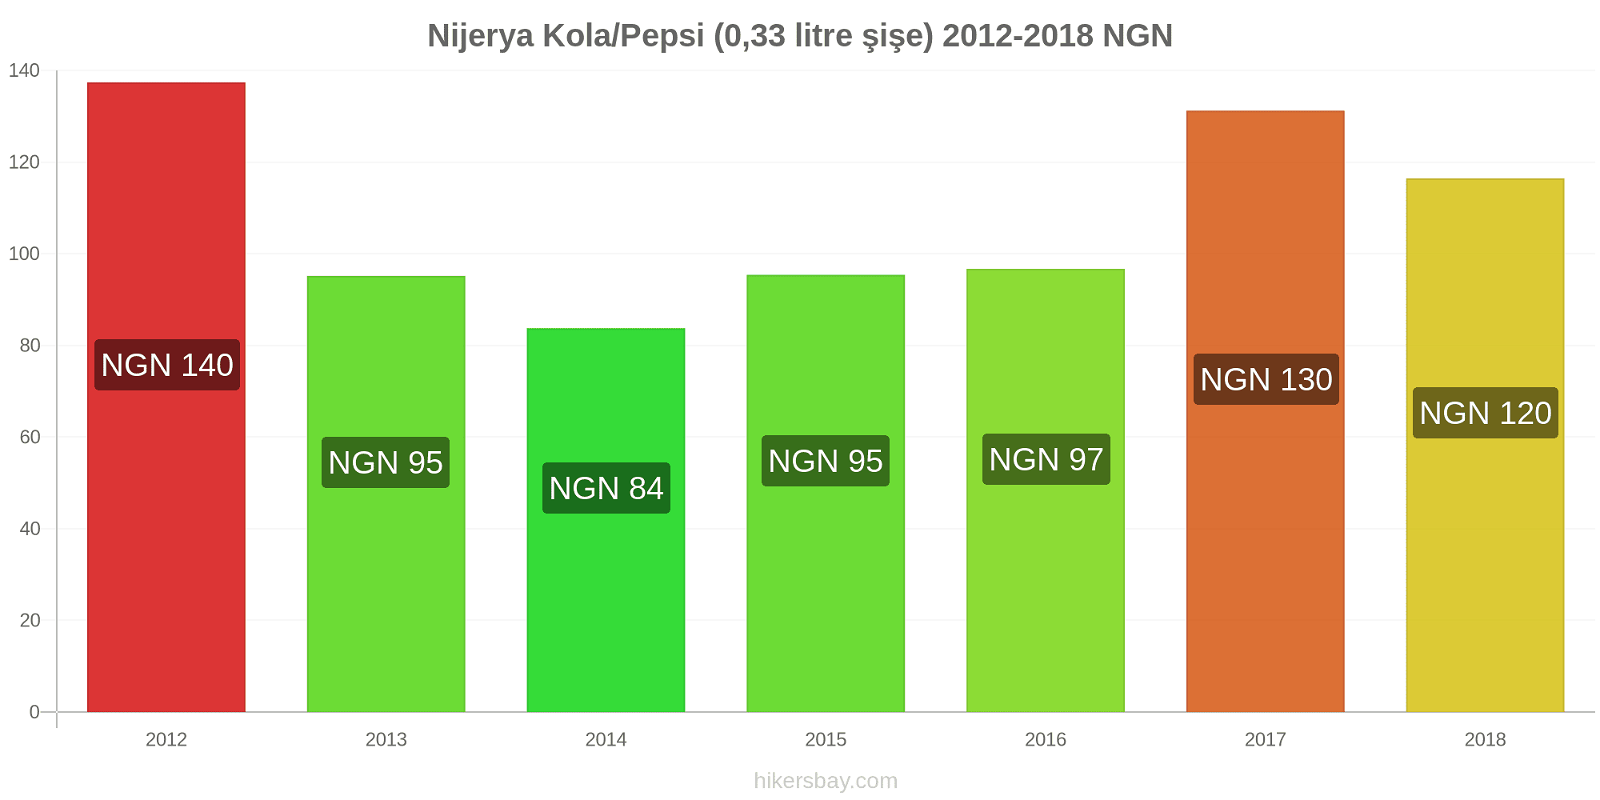 Nijerya fiyat değişiklikleri Kola/Pepsi (0.33 litre şişe) hikersbay.com